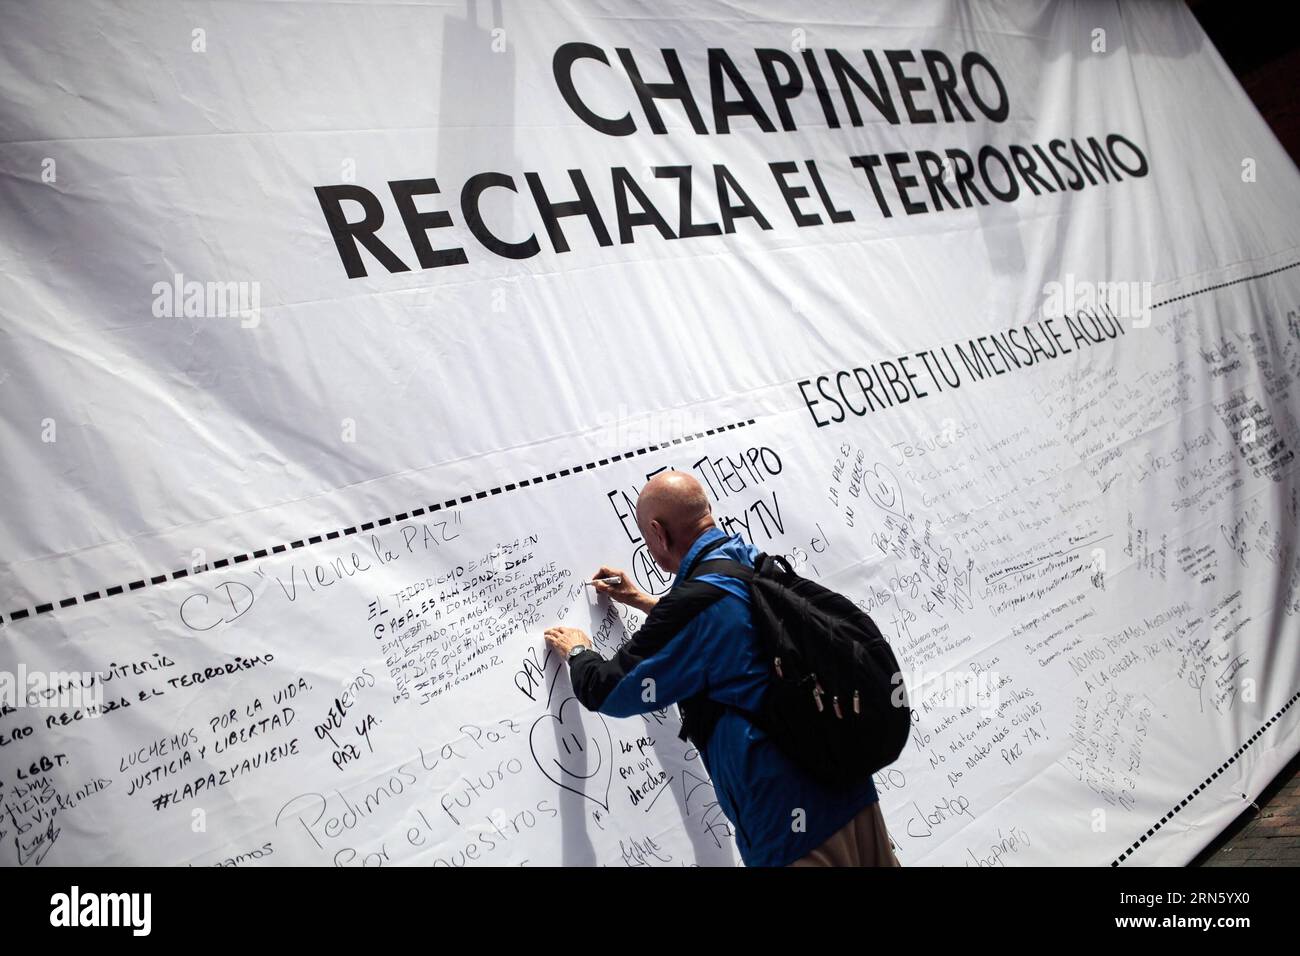 Un uomo prende parte a una manifestazione contro gli attacchi del 2 luglio, a Bogotà, capitale della Colombia, il 6 luglio 2015. La sera del 2 luglio, due esplosioni sono avvenute nel centro finanziario di Bogotà e nel settore Puente Aranda, con 10 feriti. Jhon Paz) (da) COLOMBIA-BOGOTÀ-SOCIETY-DEMONSTRATION e Jhonpaz PUBLICATIONxNOTxINxCHN un uomo partecipa a una dimostrazione contro gli attacchi del 2 luglio a Bogotà capitale della Colombia IL 6 luglio 2015 la sera del 2 luglio due esplosioni sono avvenute nel Centro finanziario di Bogotà e il settore Puente Aranda ha lasciato 10 celebrità ferite Jhon Paz là, Colombia Foto Stock